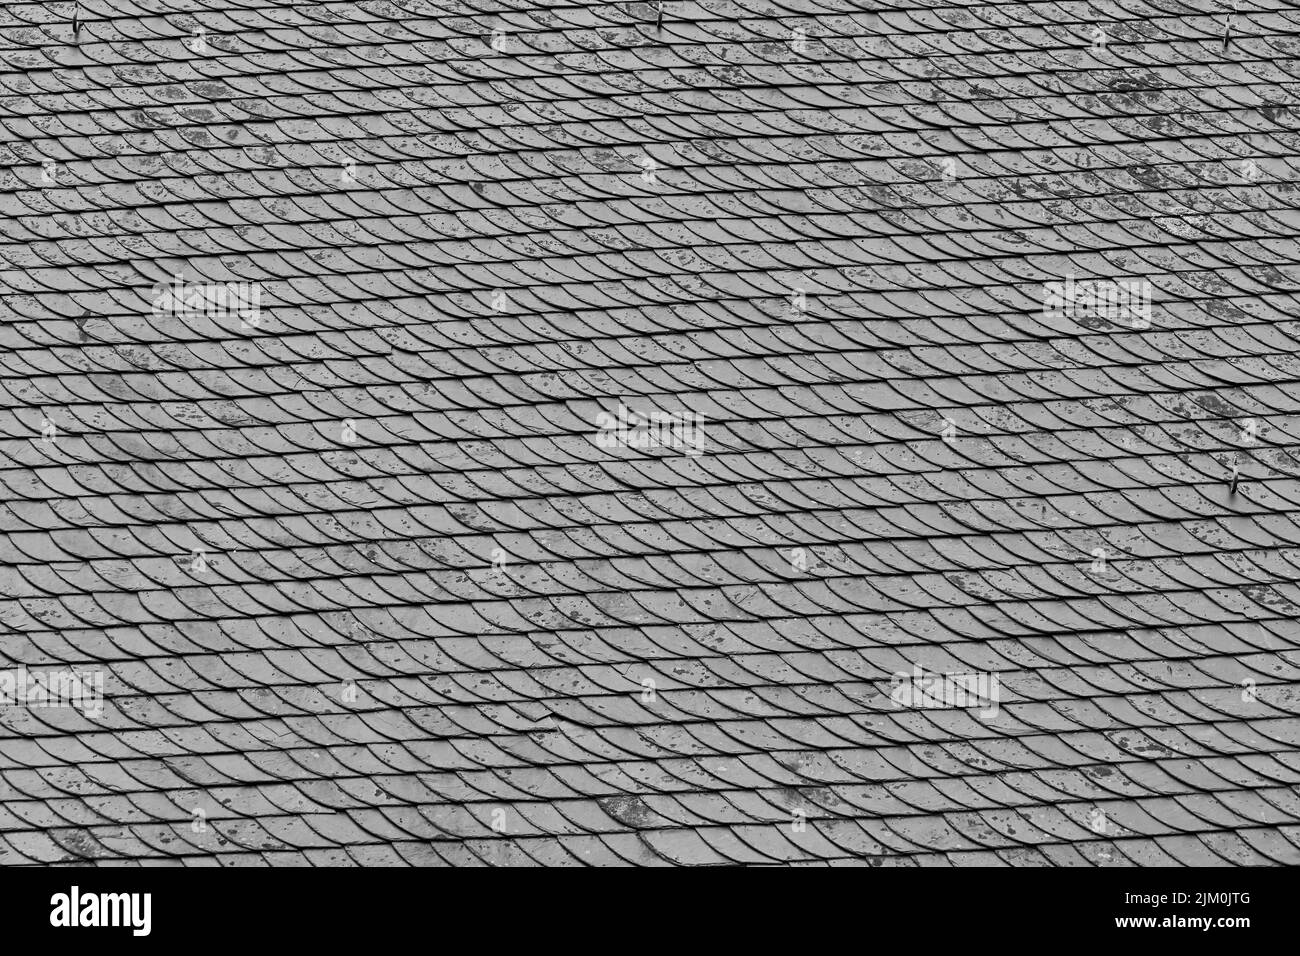 Une belle photo d'un grand carrelage gris en ardoise de toit avec motif Banque D'Images